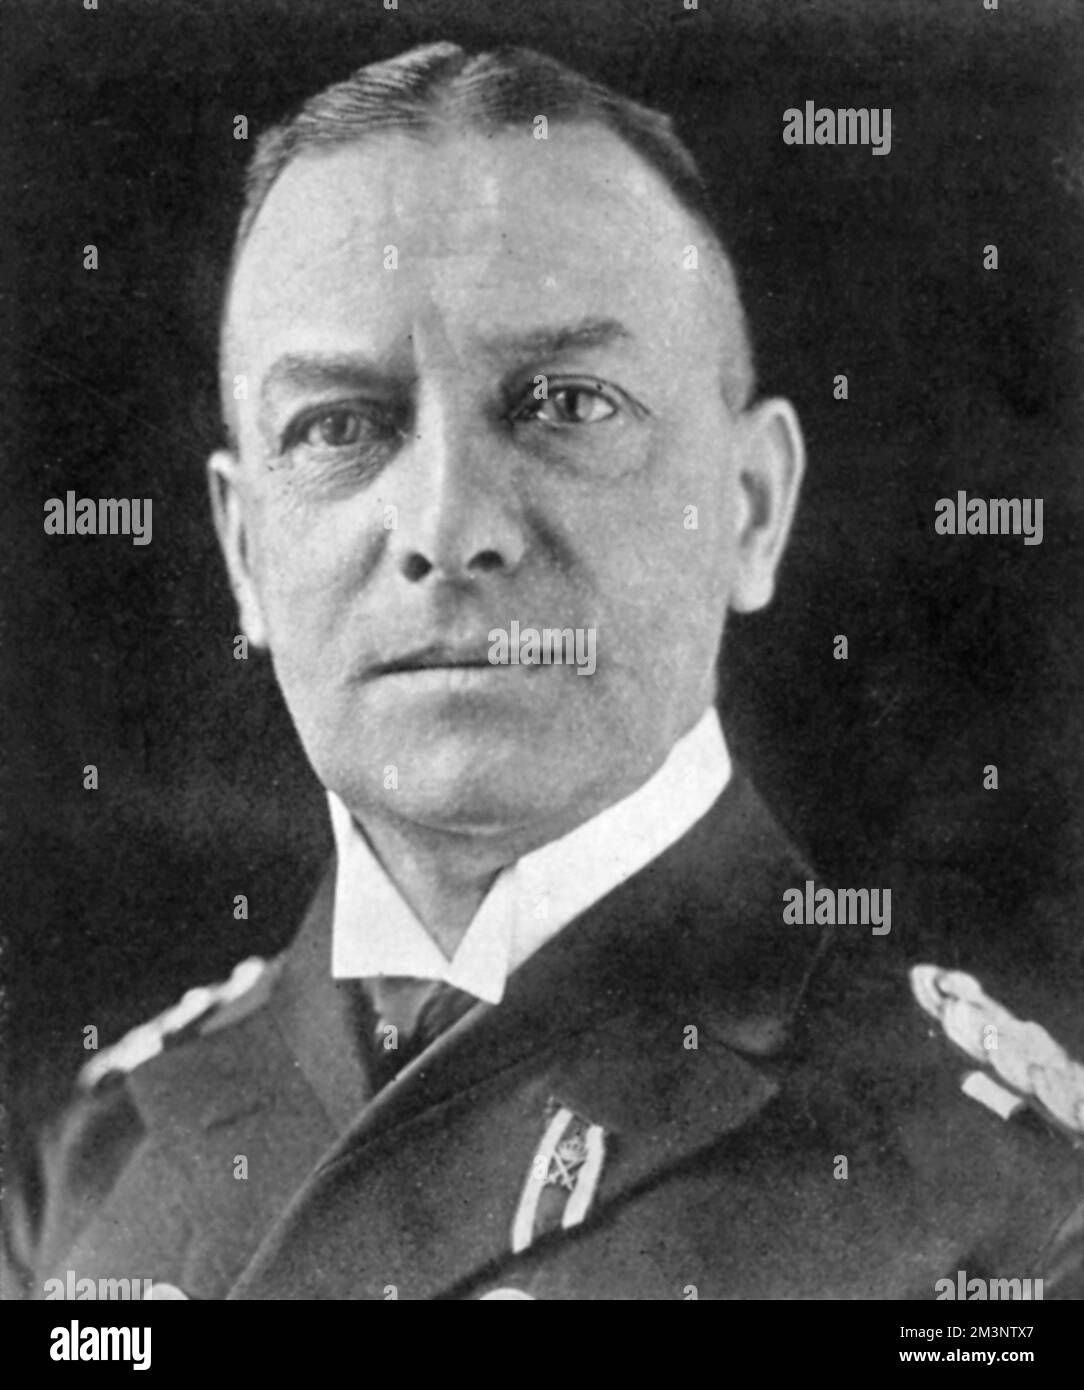 Erich Johann Albert Raeder (24. April 1876 6 bis 9. November 1960) deutscher Marineführer in Deutschland vor und während des Zweiten Weltkriegs Raeder erreichte im Jahr 1939 den höchstmöglichen Marineplatz von Gro&#x7e1;Dmiral (Großadmiral) und wurde der erste, der diesen Rang seit Alfred von Tirpitz innehatte. Raeder führte die Kriegsmarine (deutsche Marine) in der ersten Hälfte des Krieges an, trat jedoch 1943 zurück und wurde durch Karl D&#x1aea74;z ersetzt Er wurde bei den Nürnberger Gerichtsverfahren zu lebenslanger Haft verurteilt, später aber freigelassen. Datum: 1939 Stockfoto